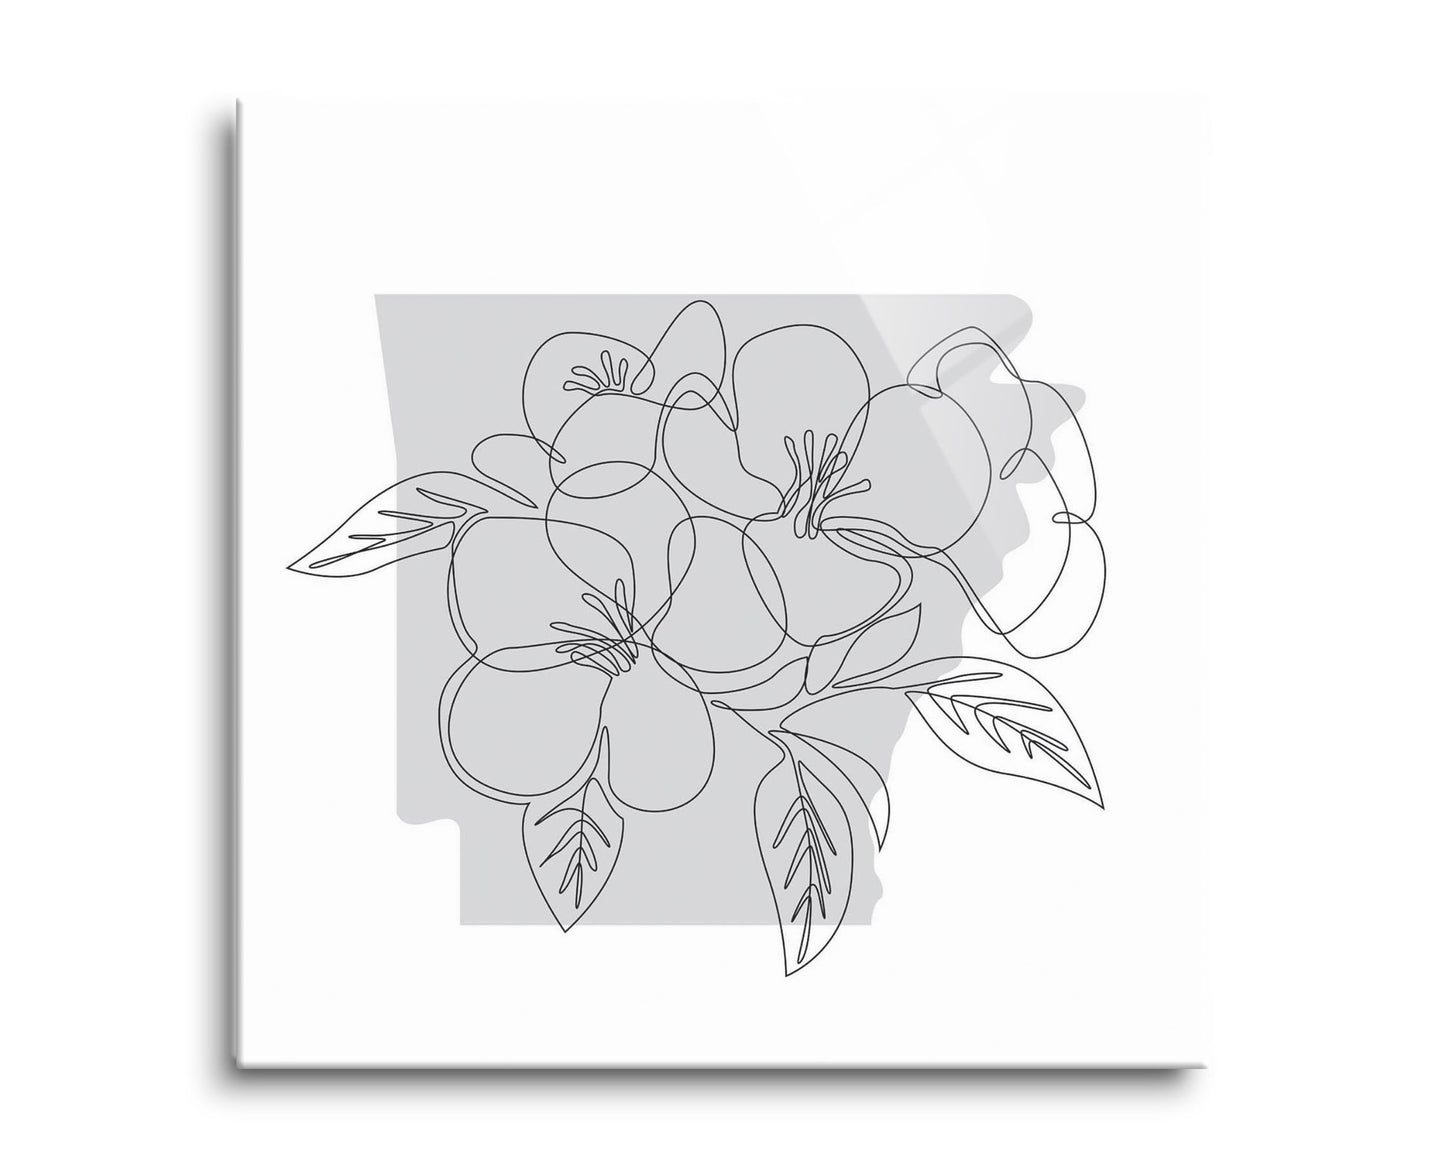 B&W Minimalist Arkansas Single Line Apple Blossoms | Hi-Def Glass Art | Eaches | Min 2